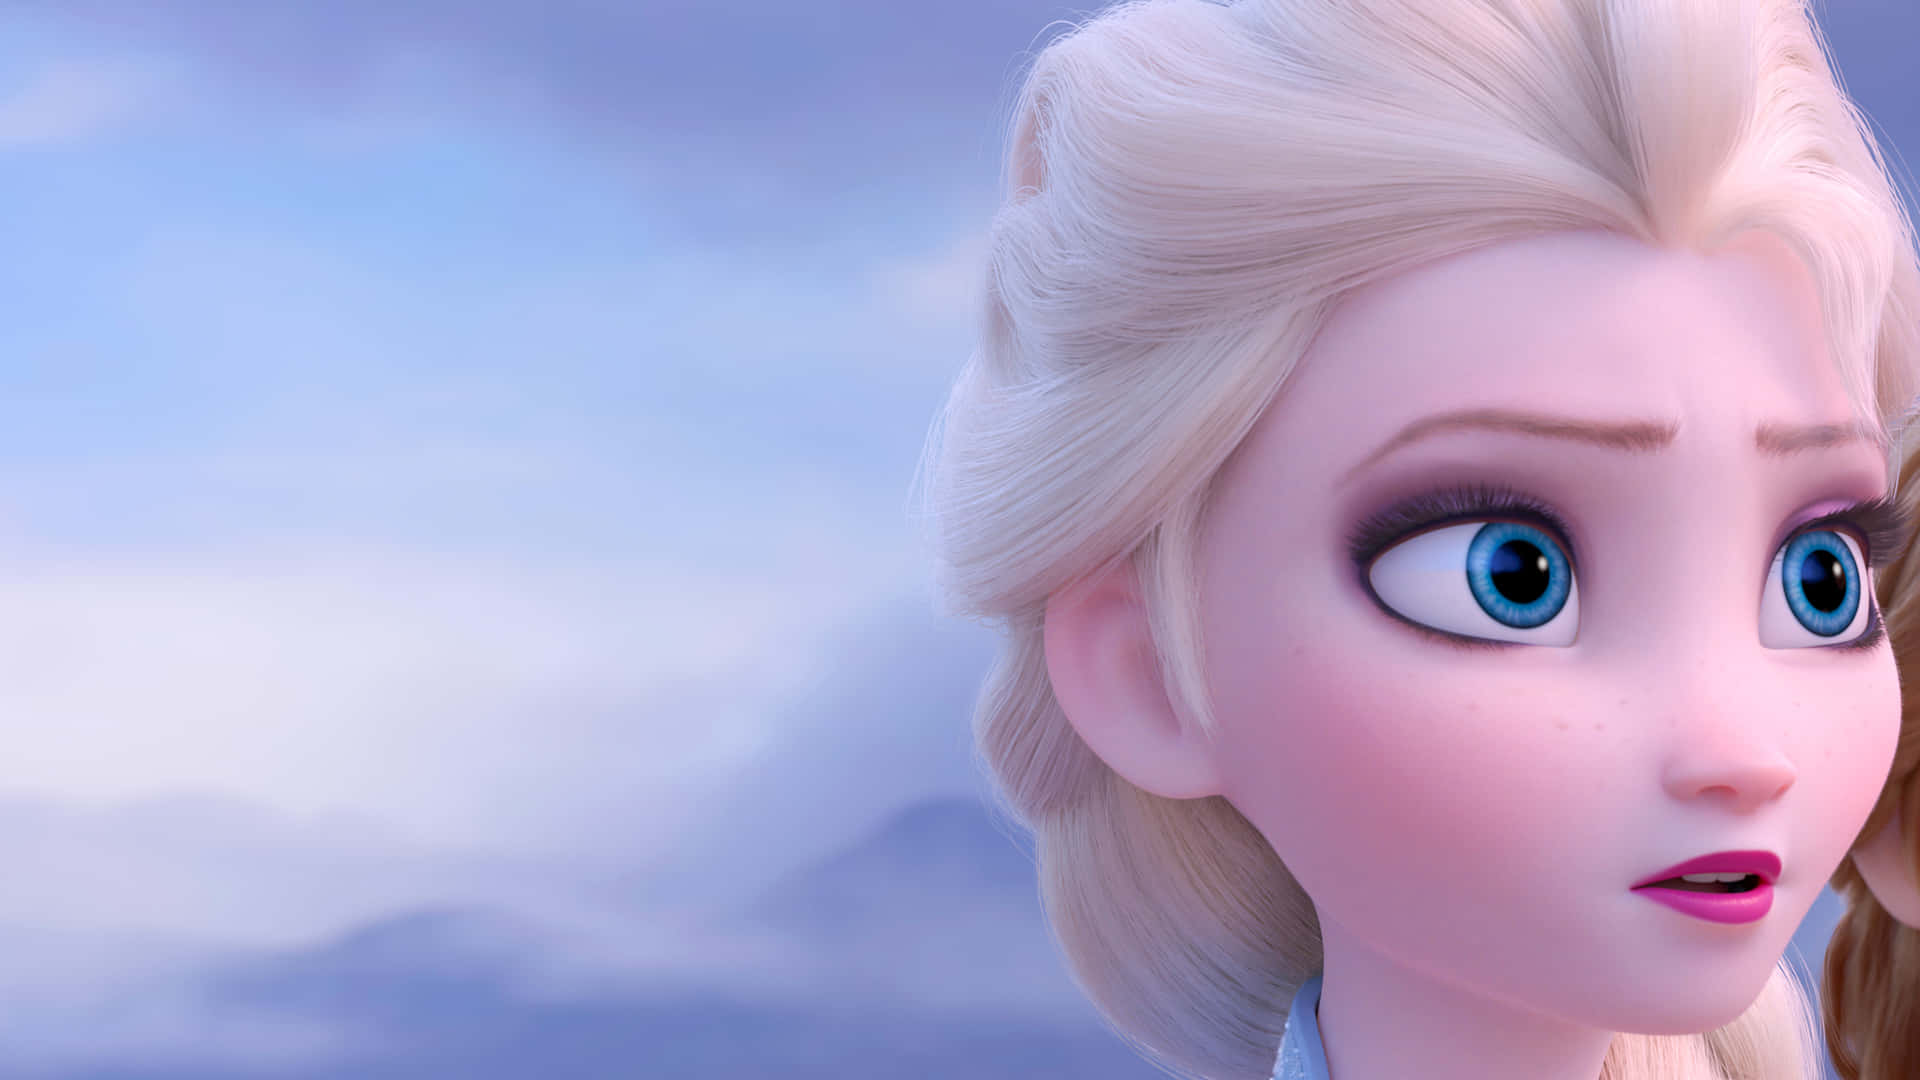 Frozen Elsa And Anna Wallpaper